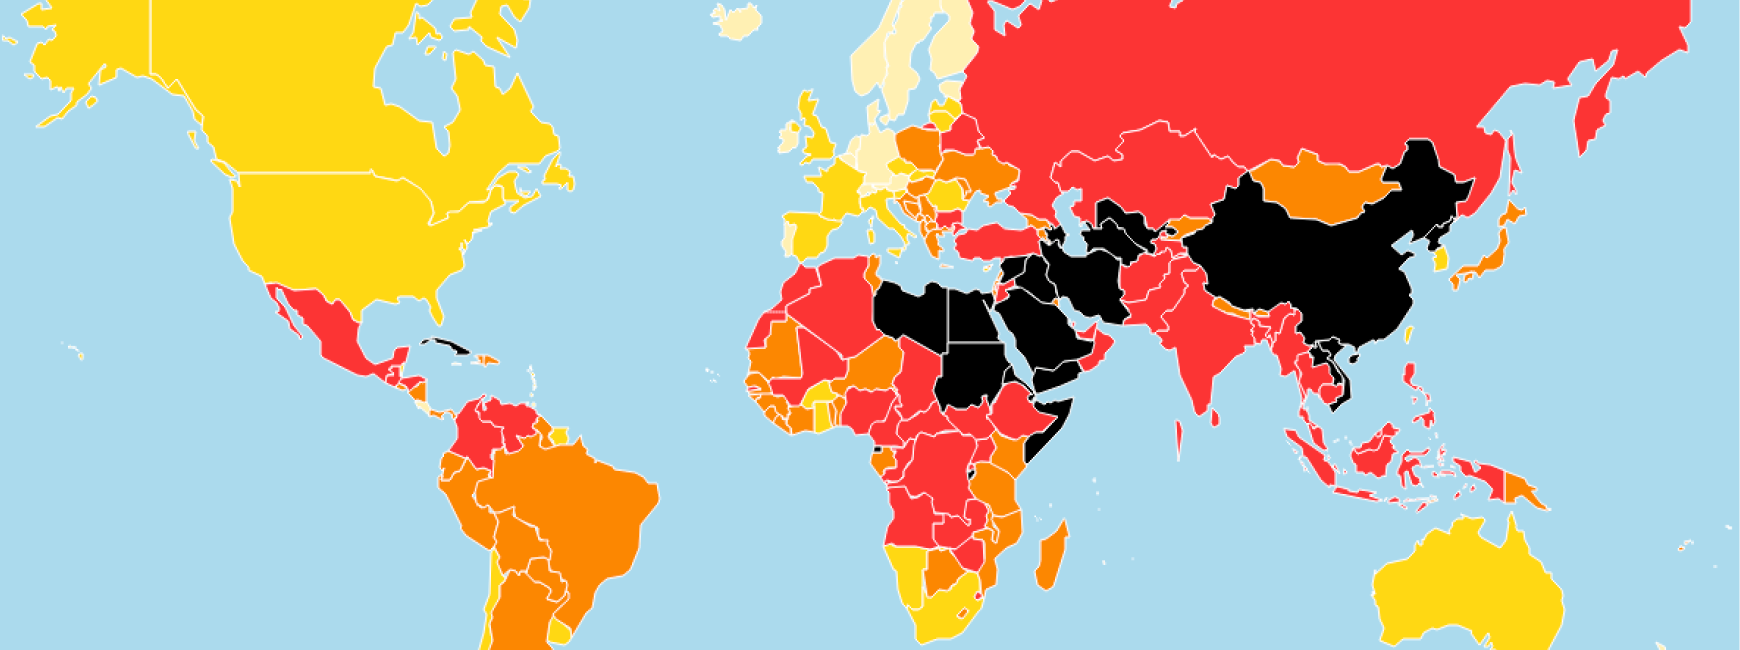 2020 年世界新聞自由指數地圖